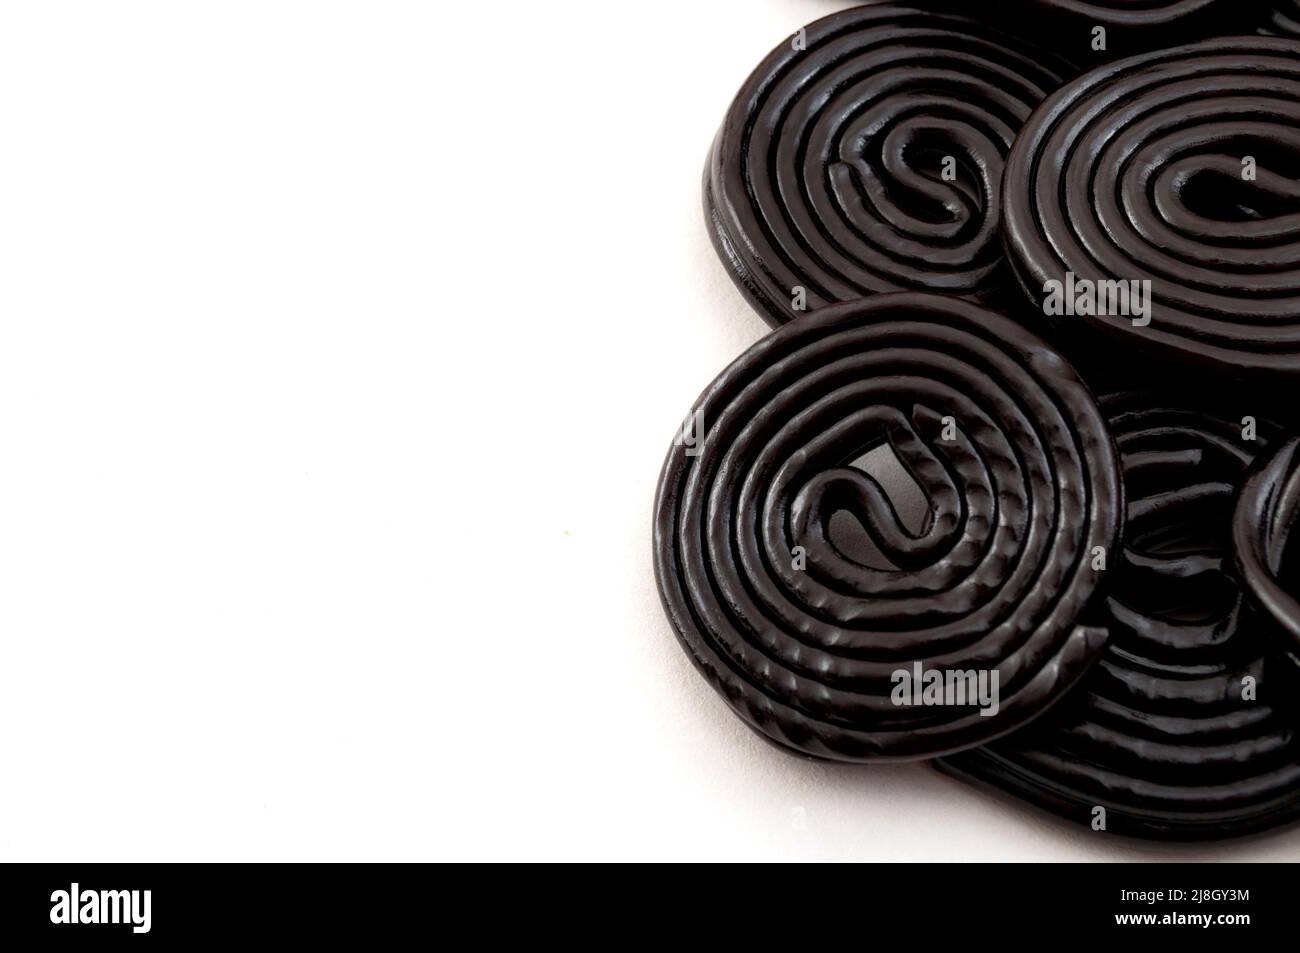 Espirales de regaliz negro, dulces masticables y delicioso concepto de postre con ruedas de regaliz que se saborean con el extracto de la raíz del Glycyr Foto de stock